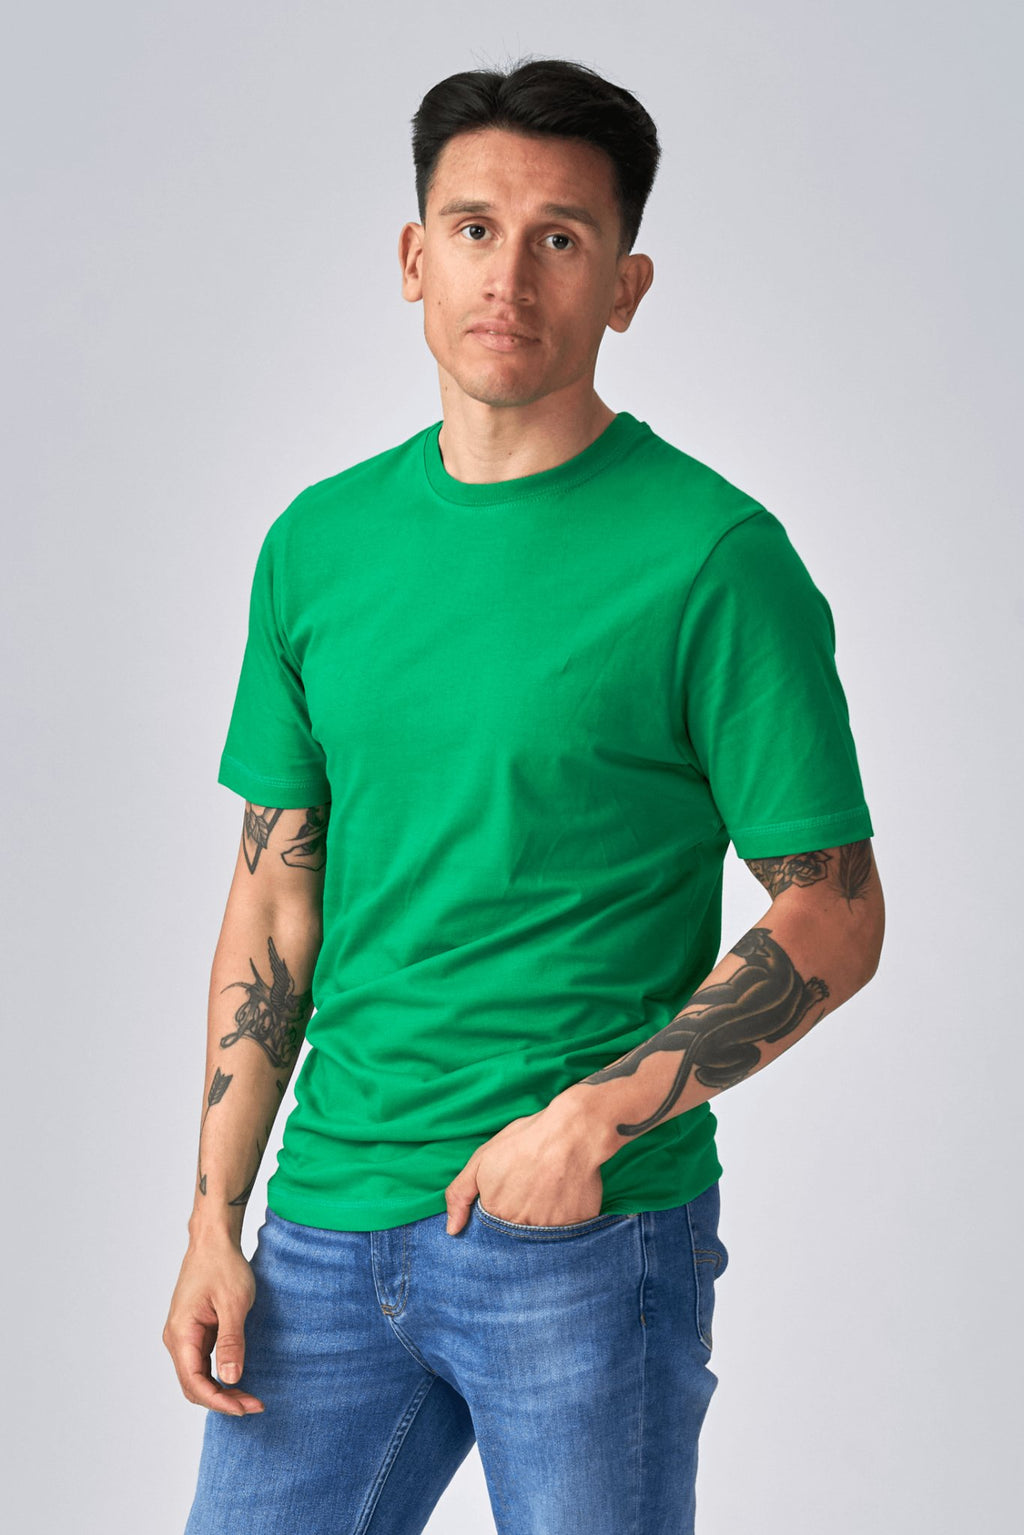 Ecológico Basic Camisetas - Paquete de 9 unidades (correo electrónico)